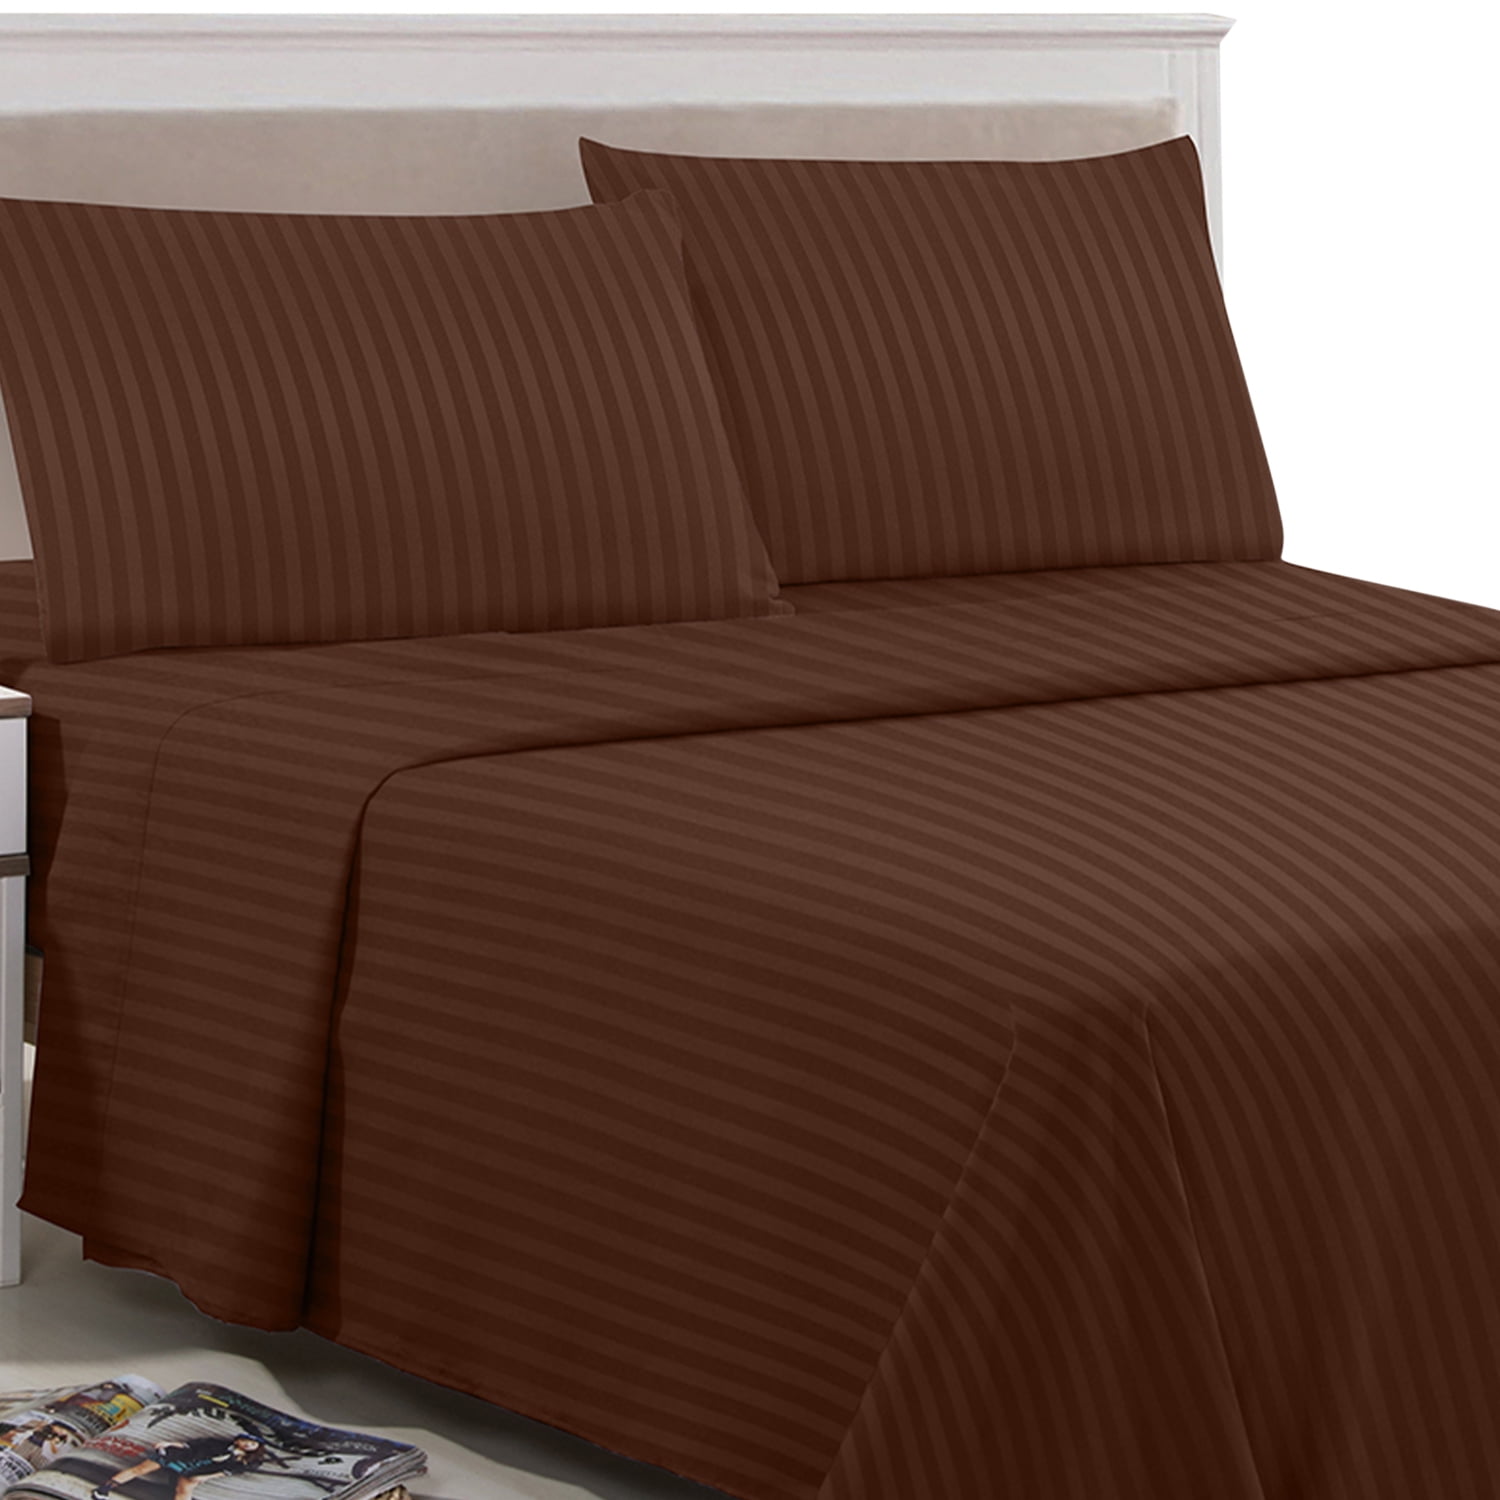 Details about   Bed Sheet Set 4-Piece 1 Flat Sheet 1 Deep Pocket Fitted Sheet 2 Pillow Cases 